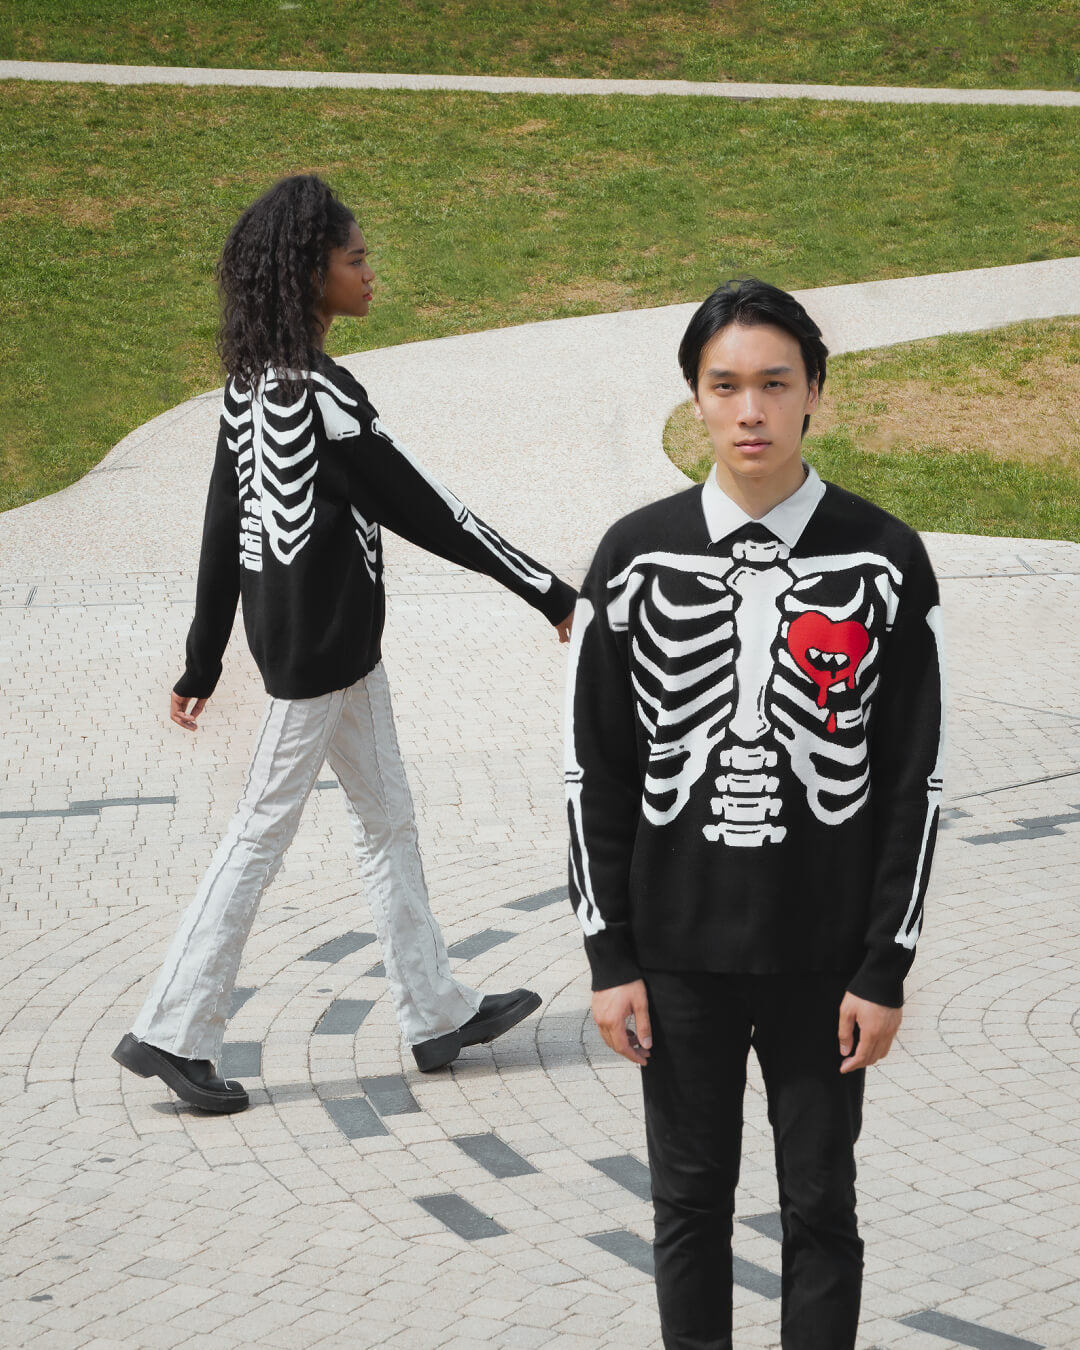 Sweater: Skeleton